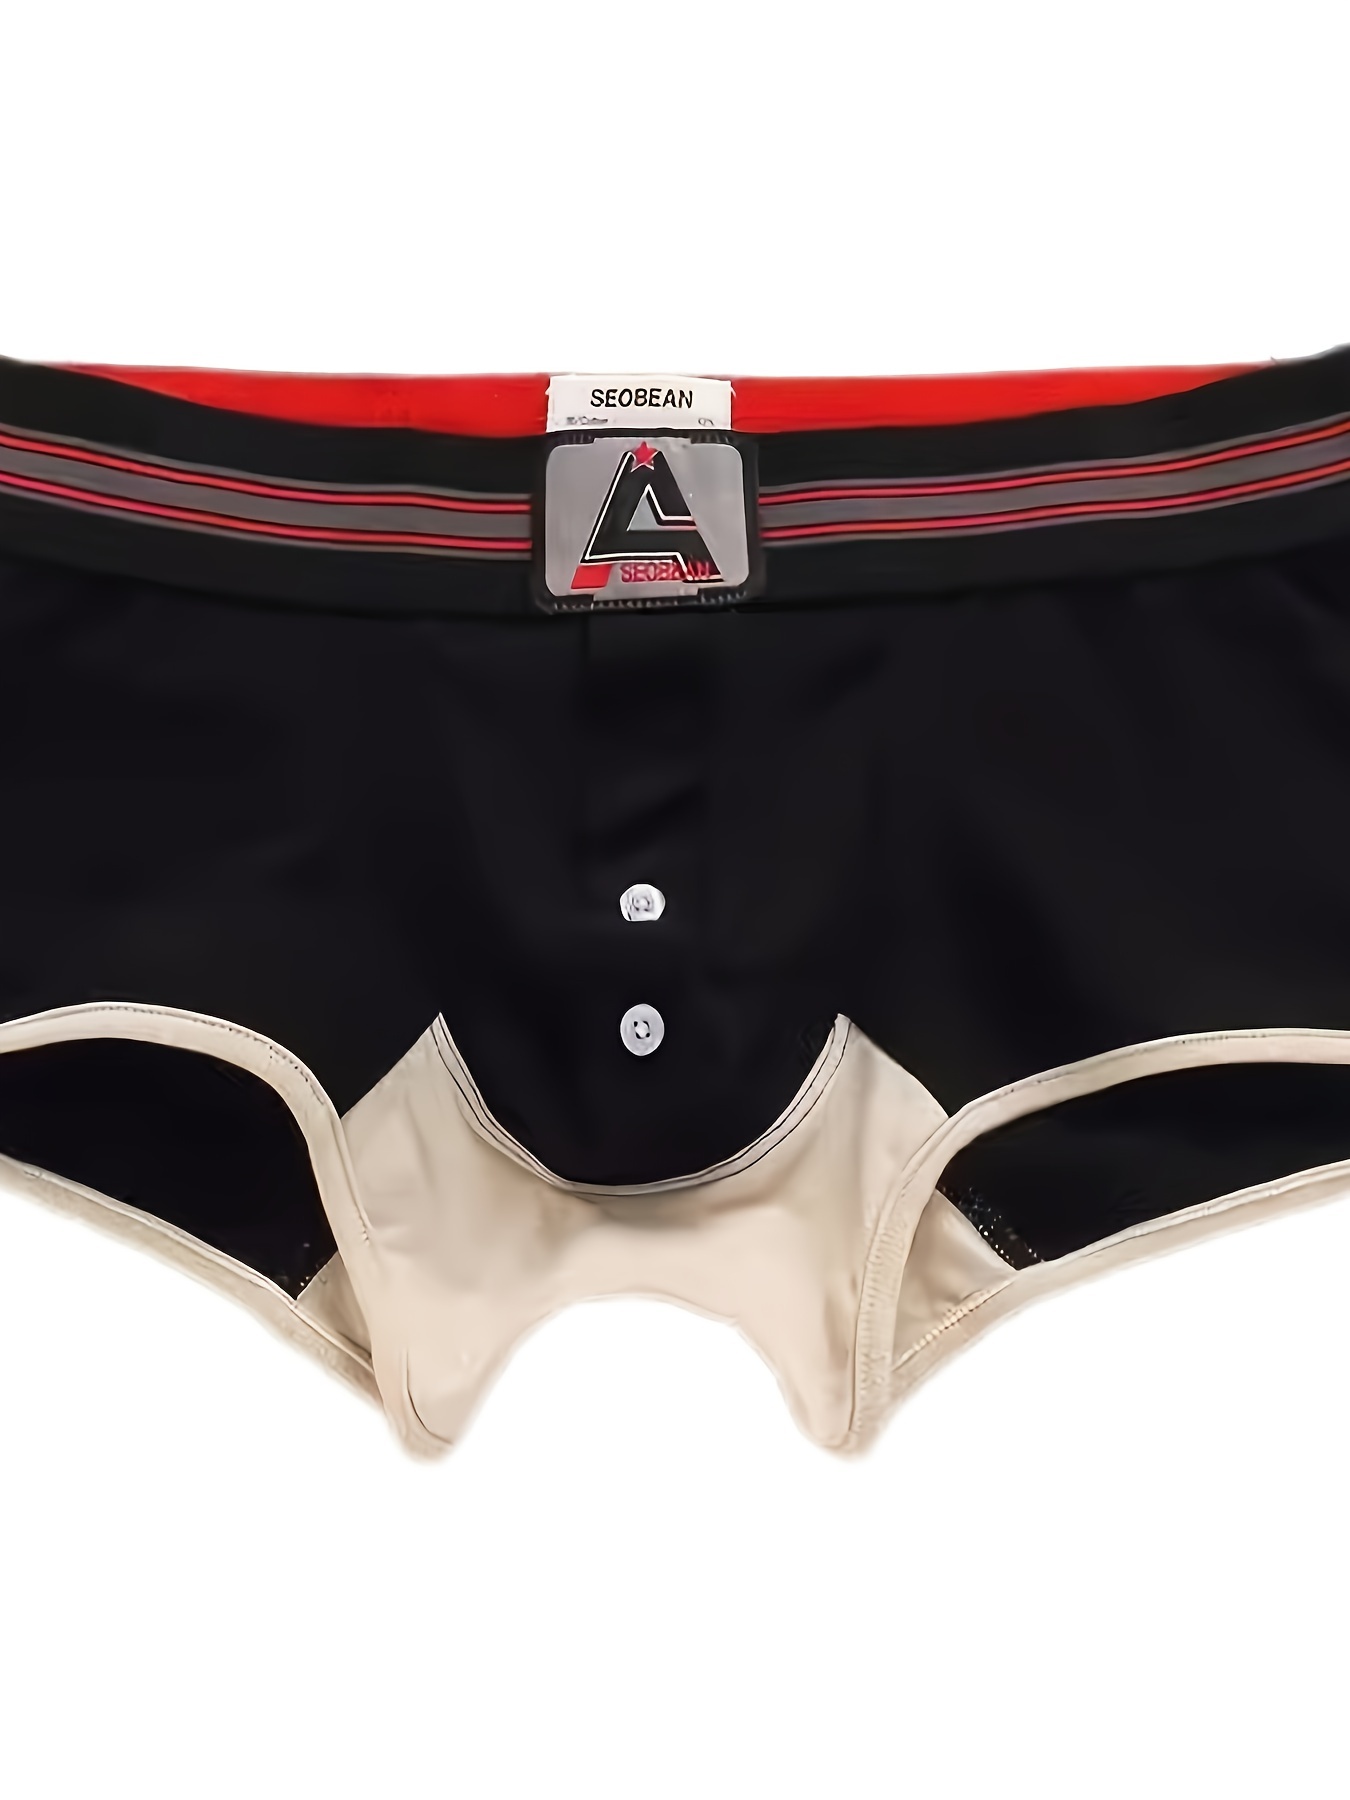 Men's Breathable Boxer Briefs Cute Pouch Underwear Cotton Shorts Underpants